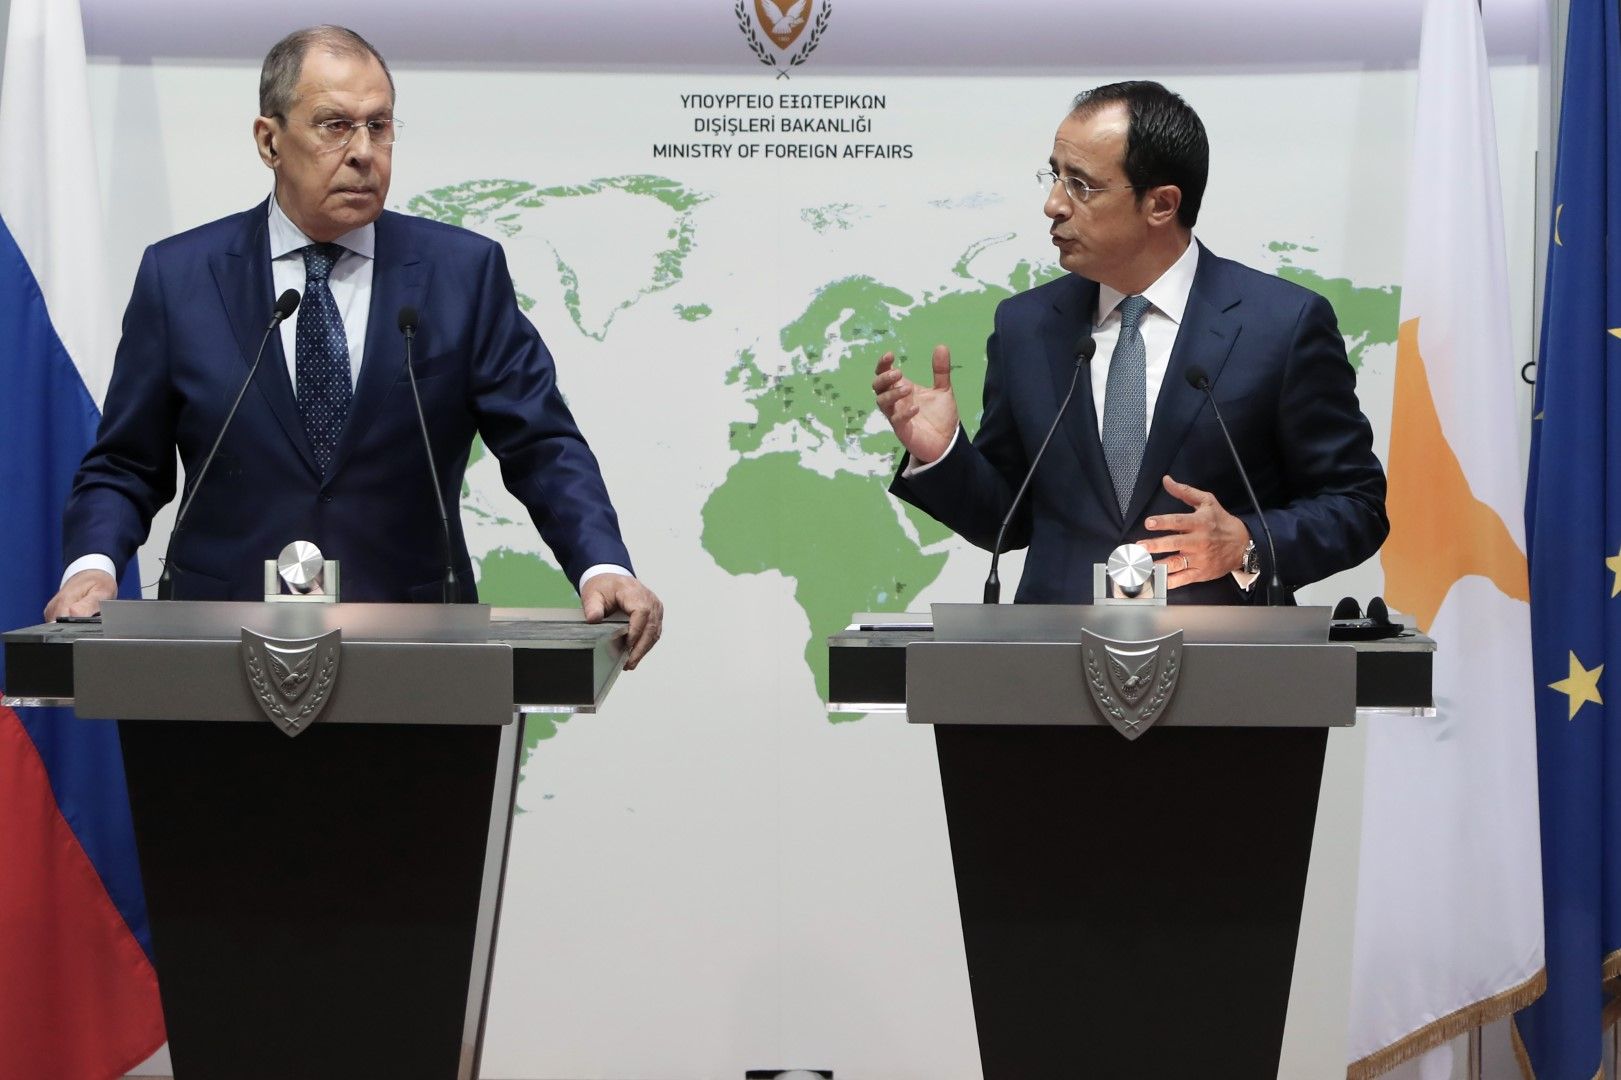 Външните министри на Русия и Кипър Сергей Лавров и Никос Христодулидис присъстваха на подписването на двустранния протокол